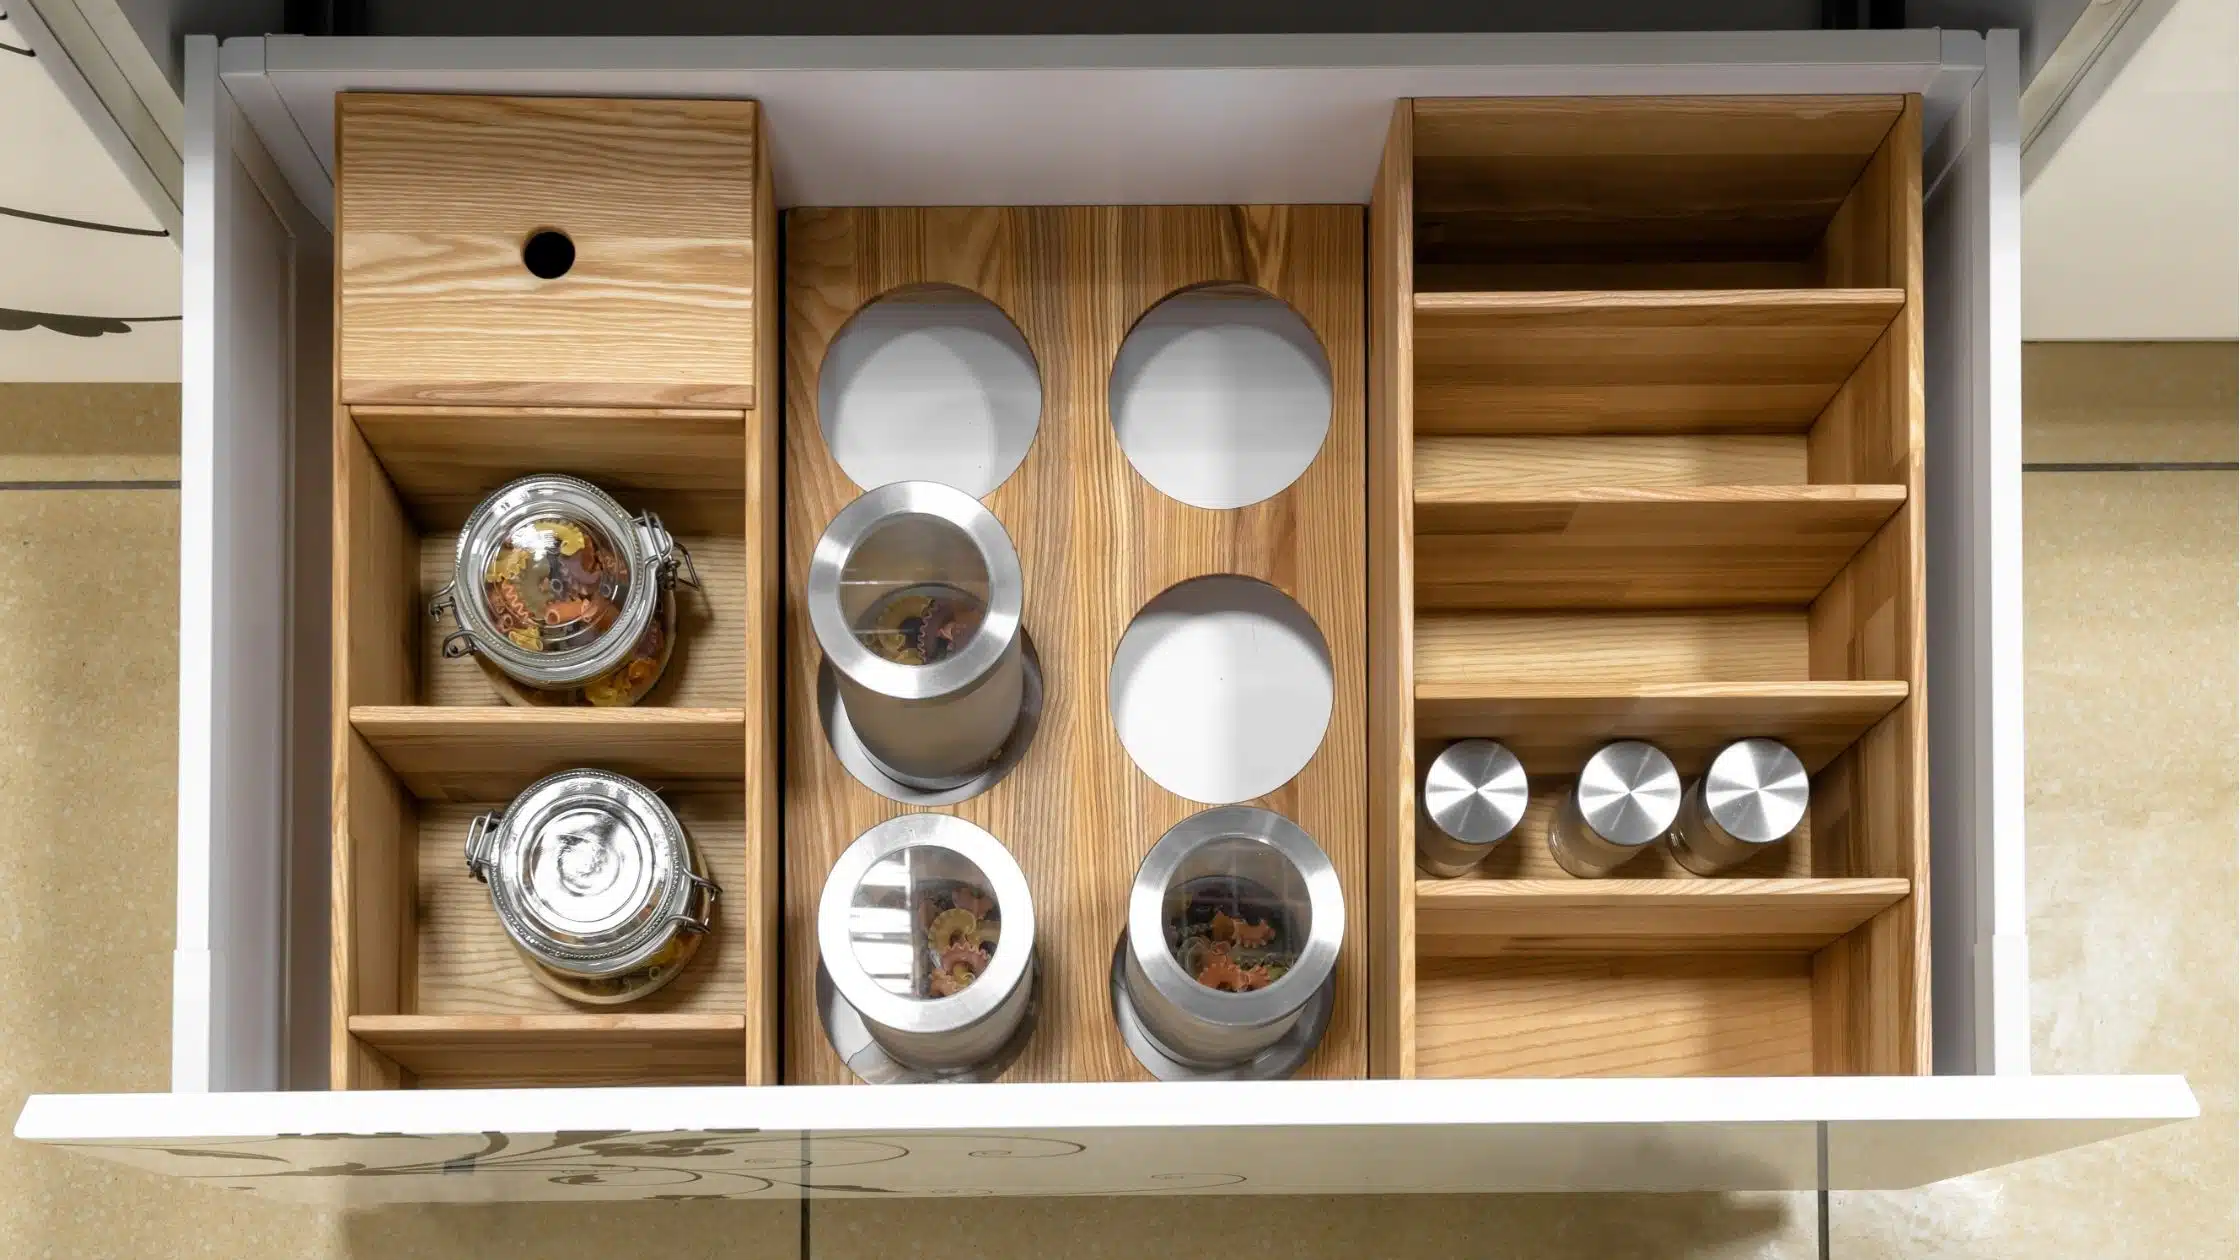 Cajones de cocina organizados con contenedores estilizados.